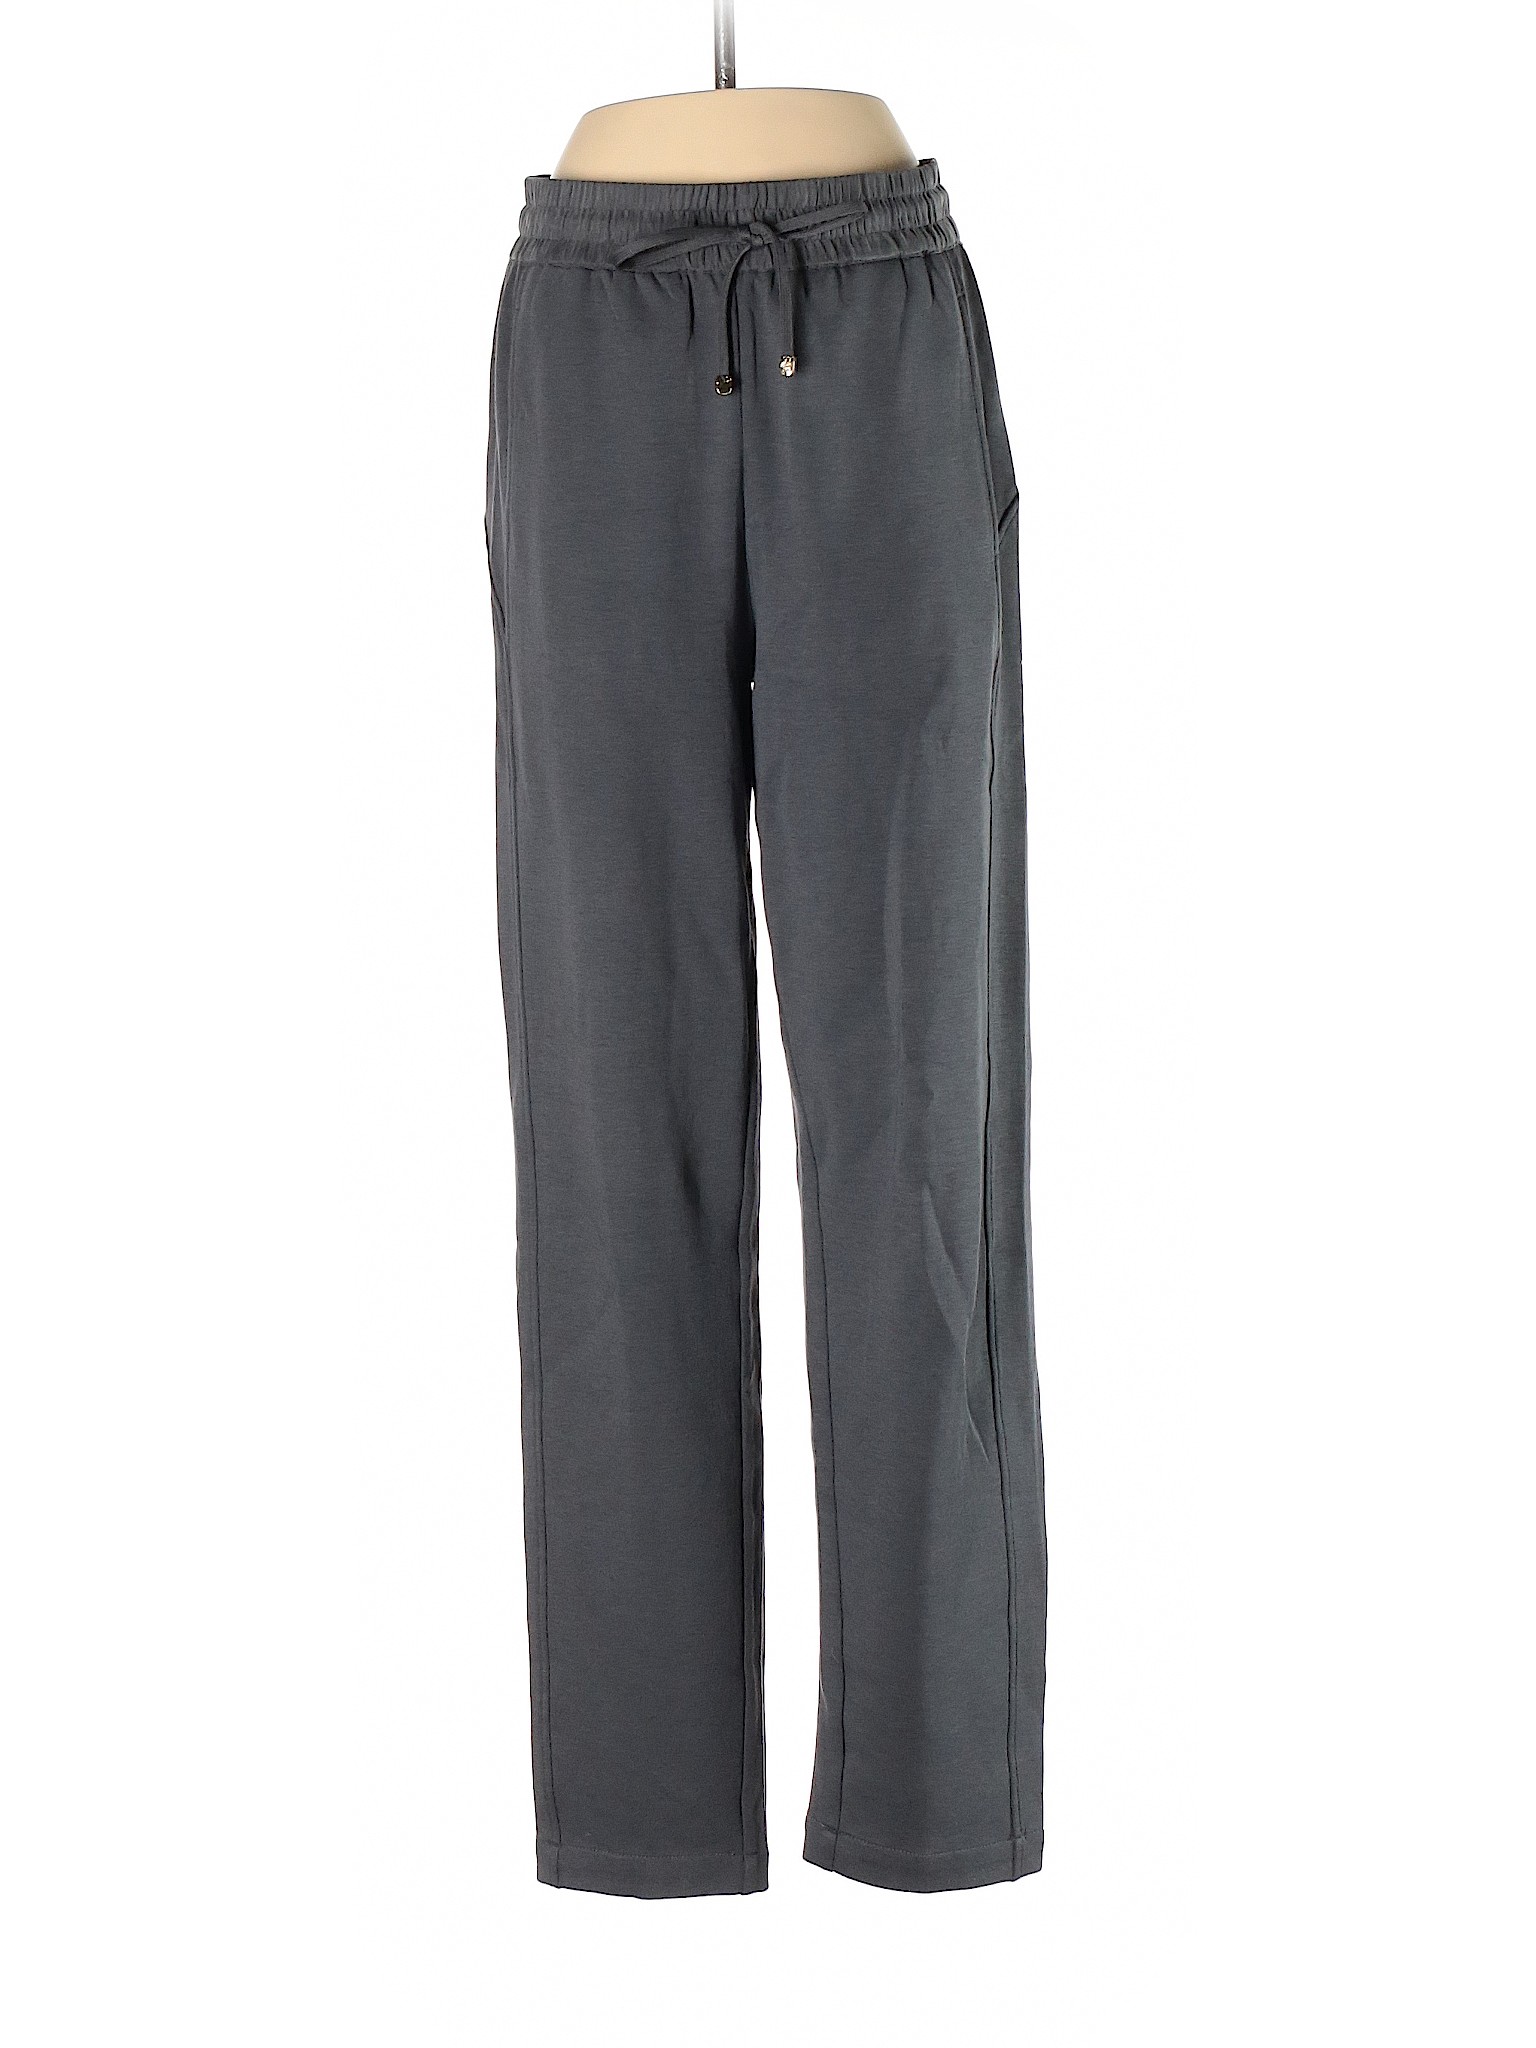 Massimo Dutti Women Gray Sweatpants XS | eBay